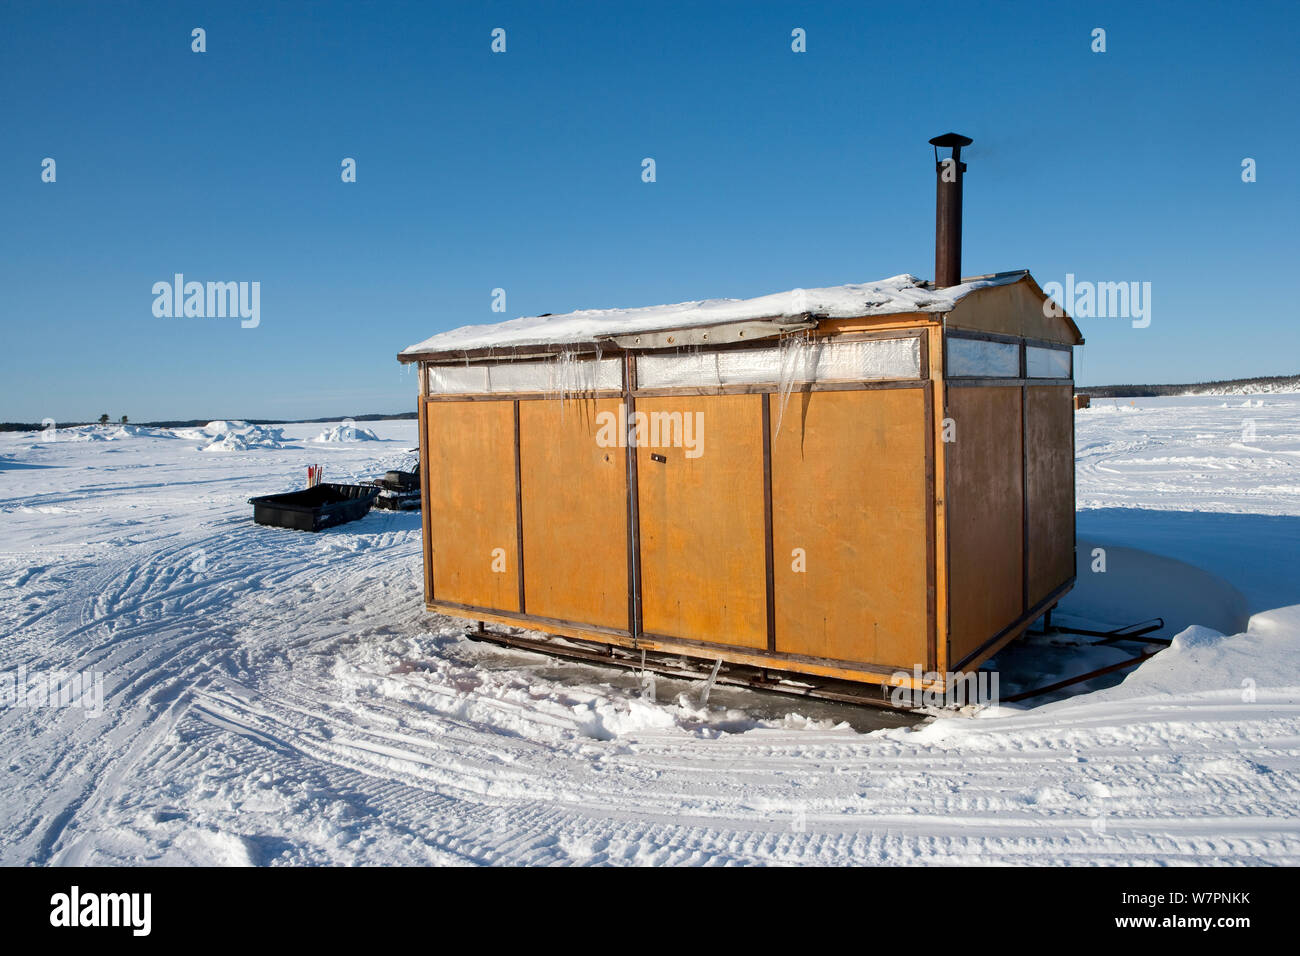 Cabanes en bois sur des traîneaux offrent un abri pour la modification et le séchage de l'équipement, cercle arctique, centre de plongée, mer Blanche, la Carélie, dans le Nord de la Russie, Mars 2010 Banque D'Images